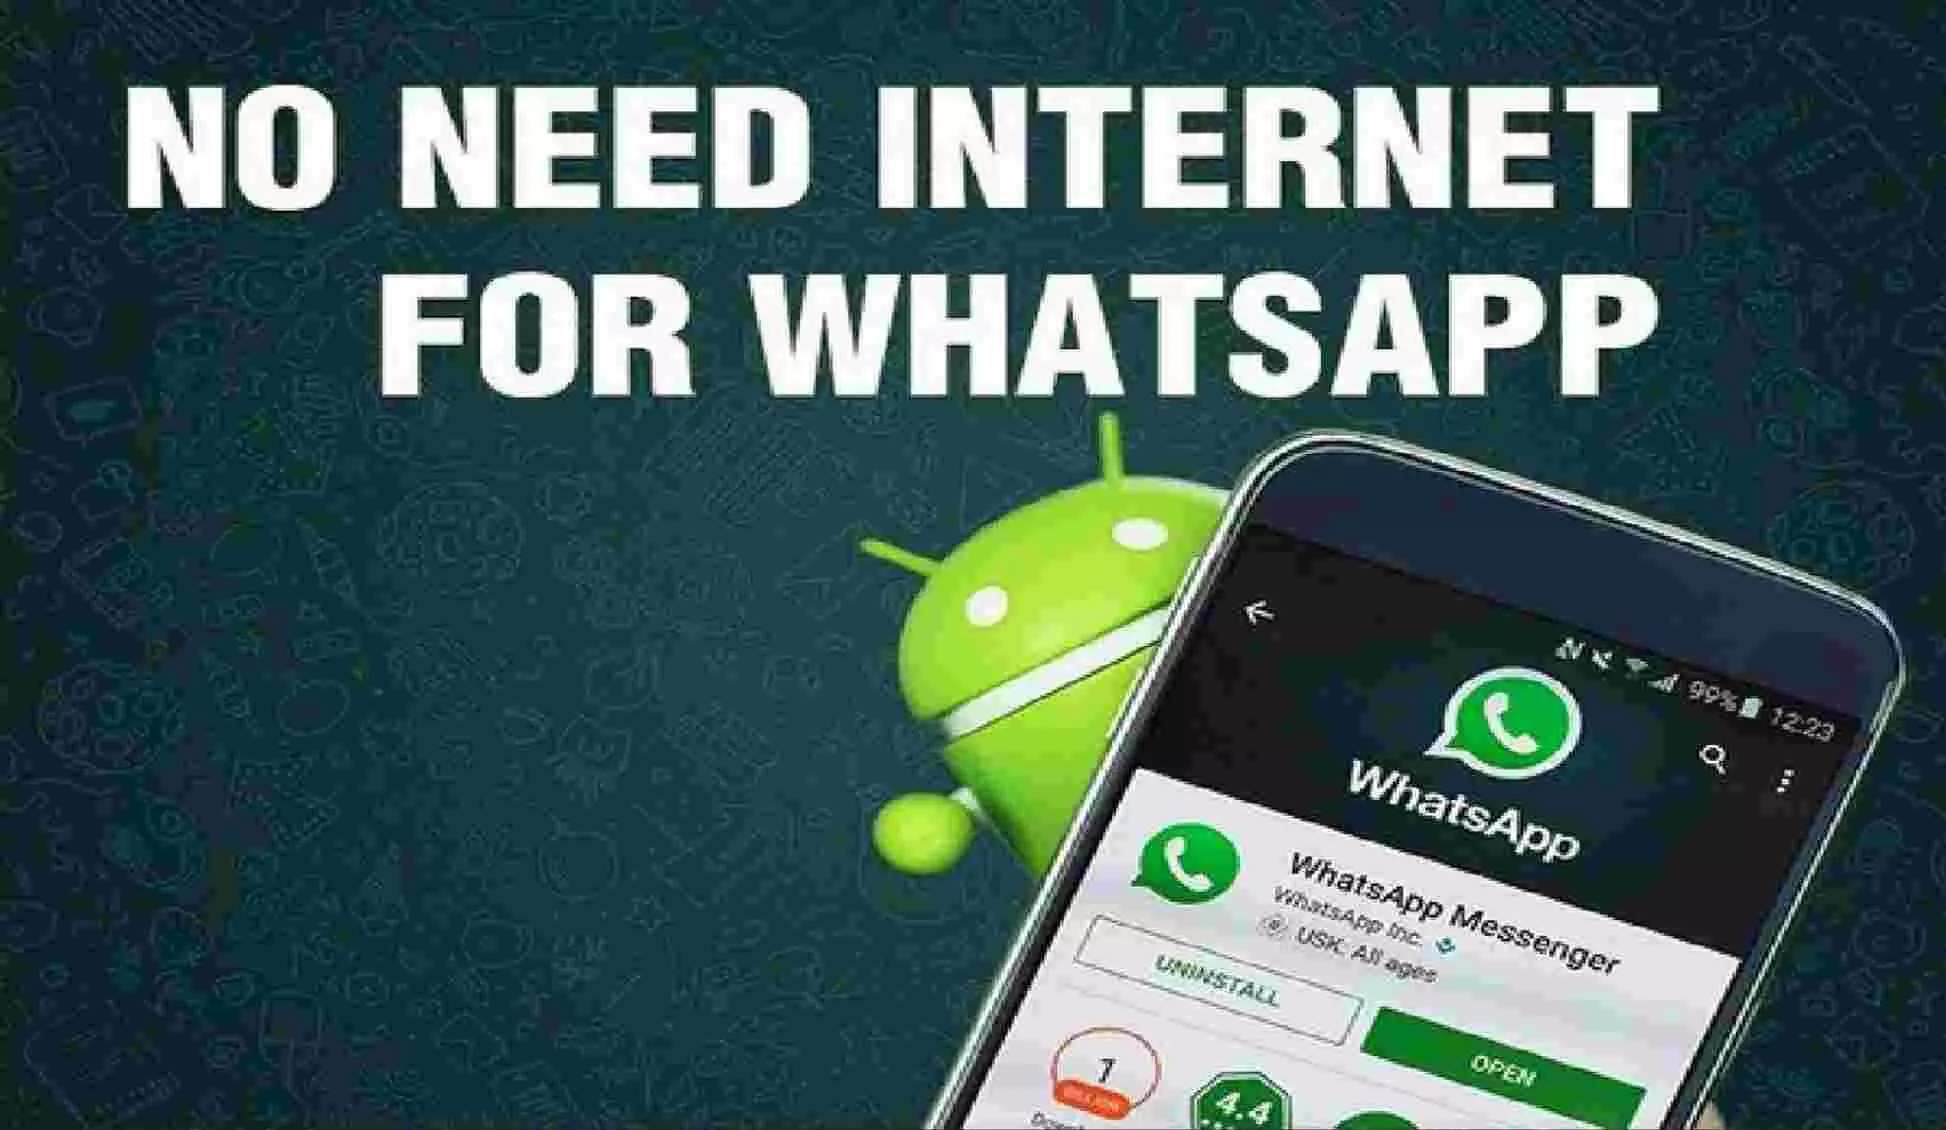 अब बिना इंटरनेट चलेगा WhatsApp, कंपनी ने खुद बताया जुगाड़, जानिए- क्या है पूरा प्रोसेस?